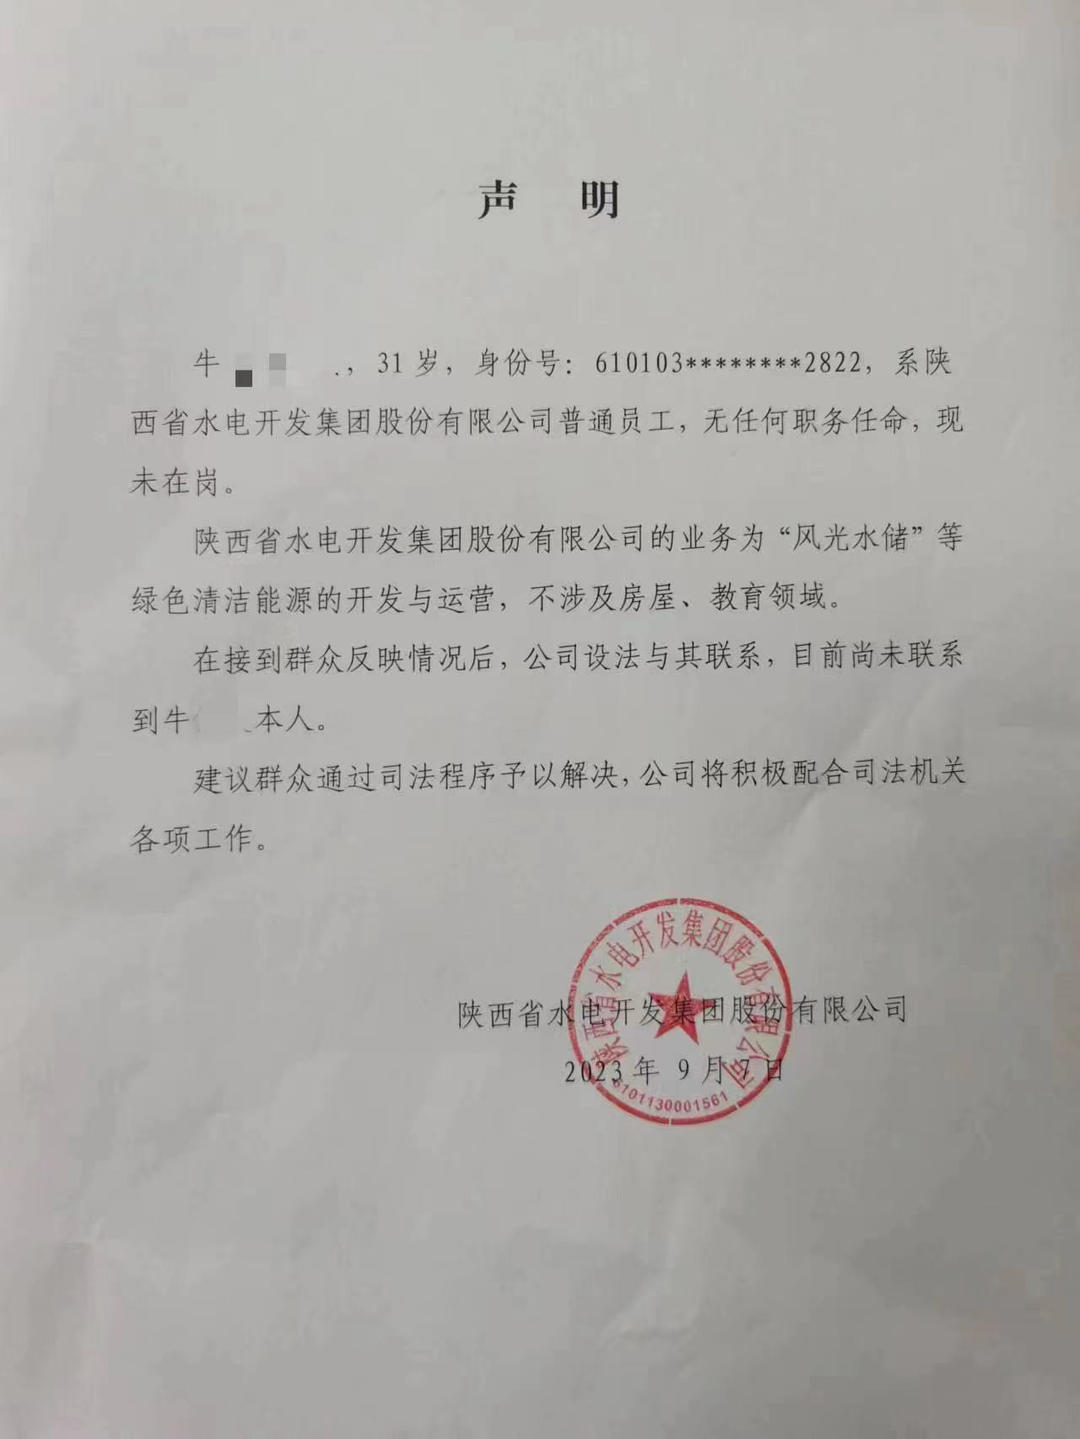 ▲陕西省水电开发集团股份有限公司在9月7日的声明